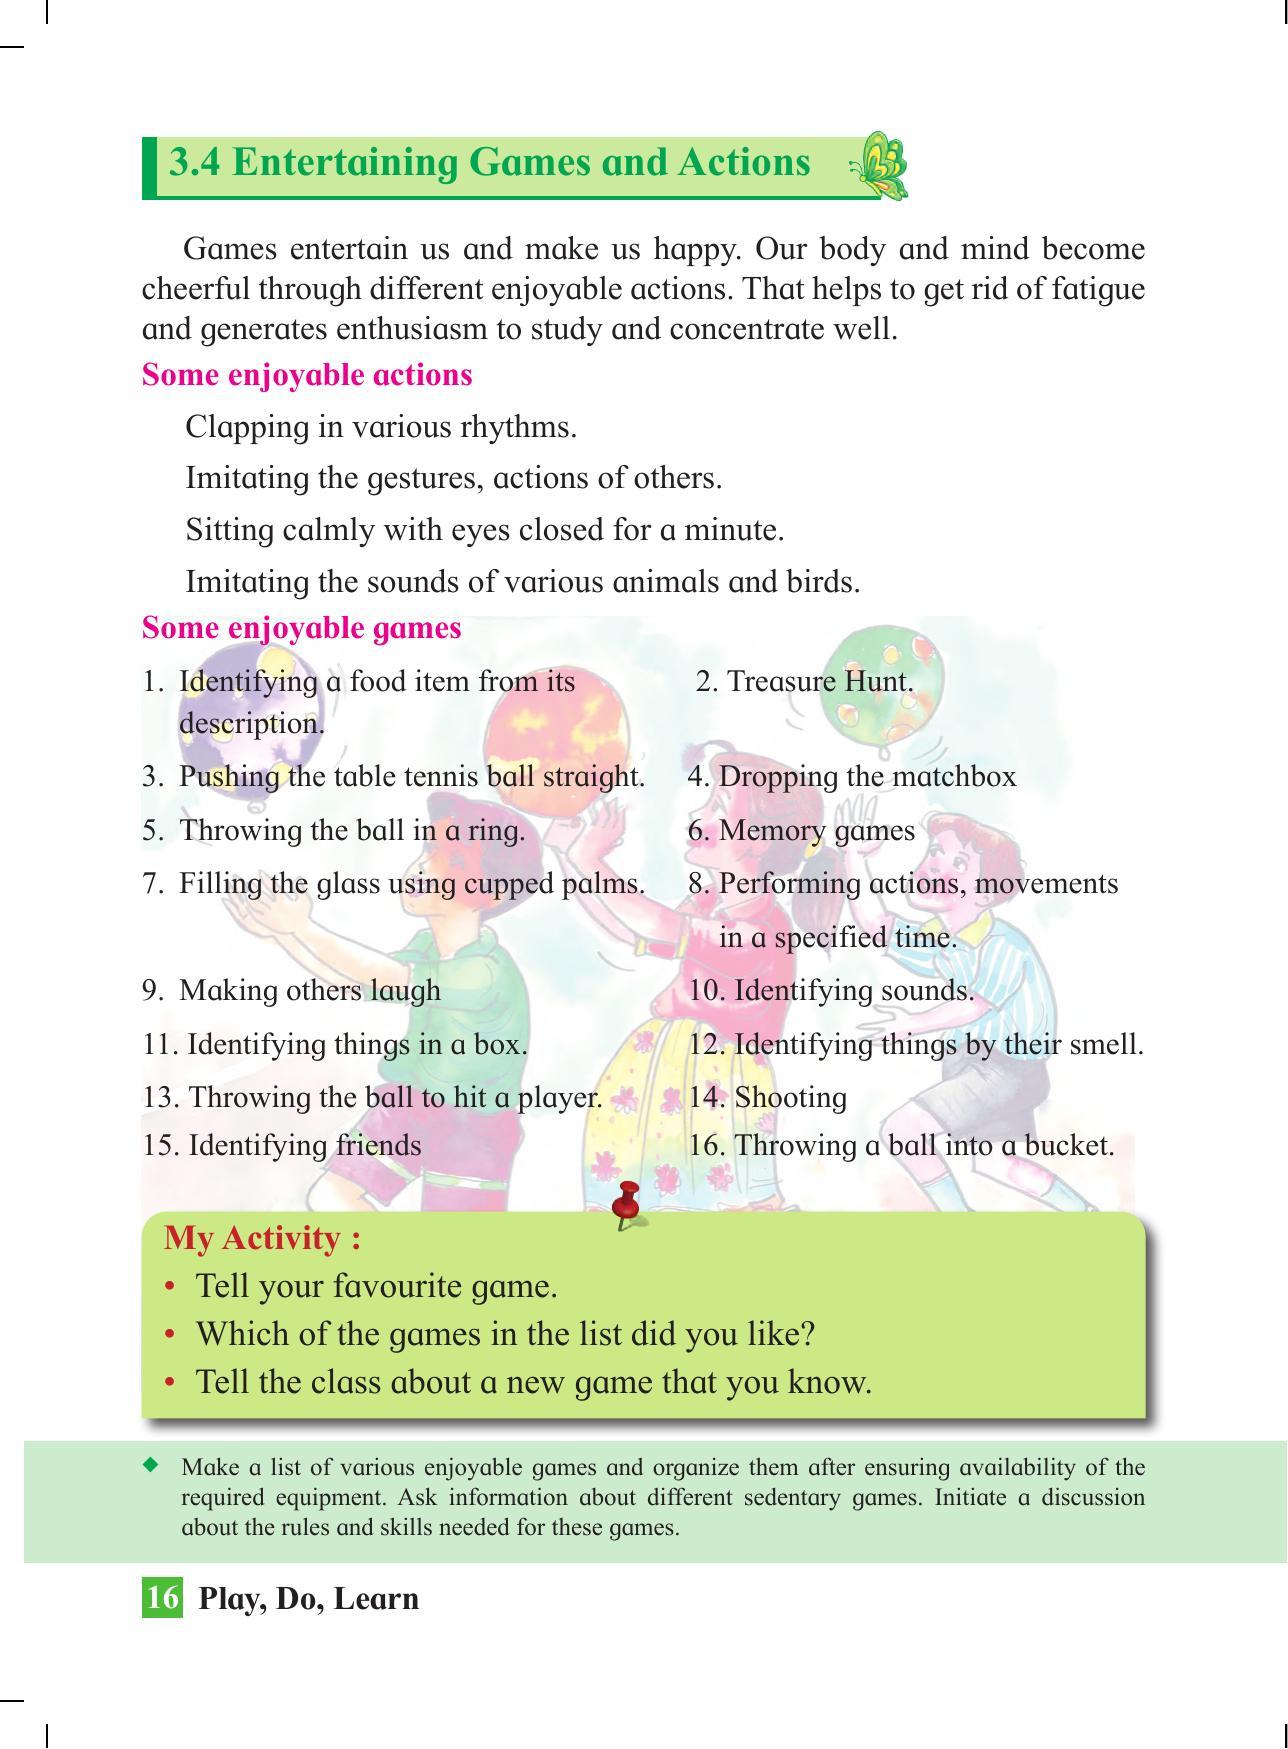 Maharashtra Board Class 4 Play Do Learn (English Medium) Textbook - Page 25